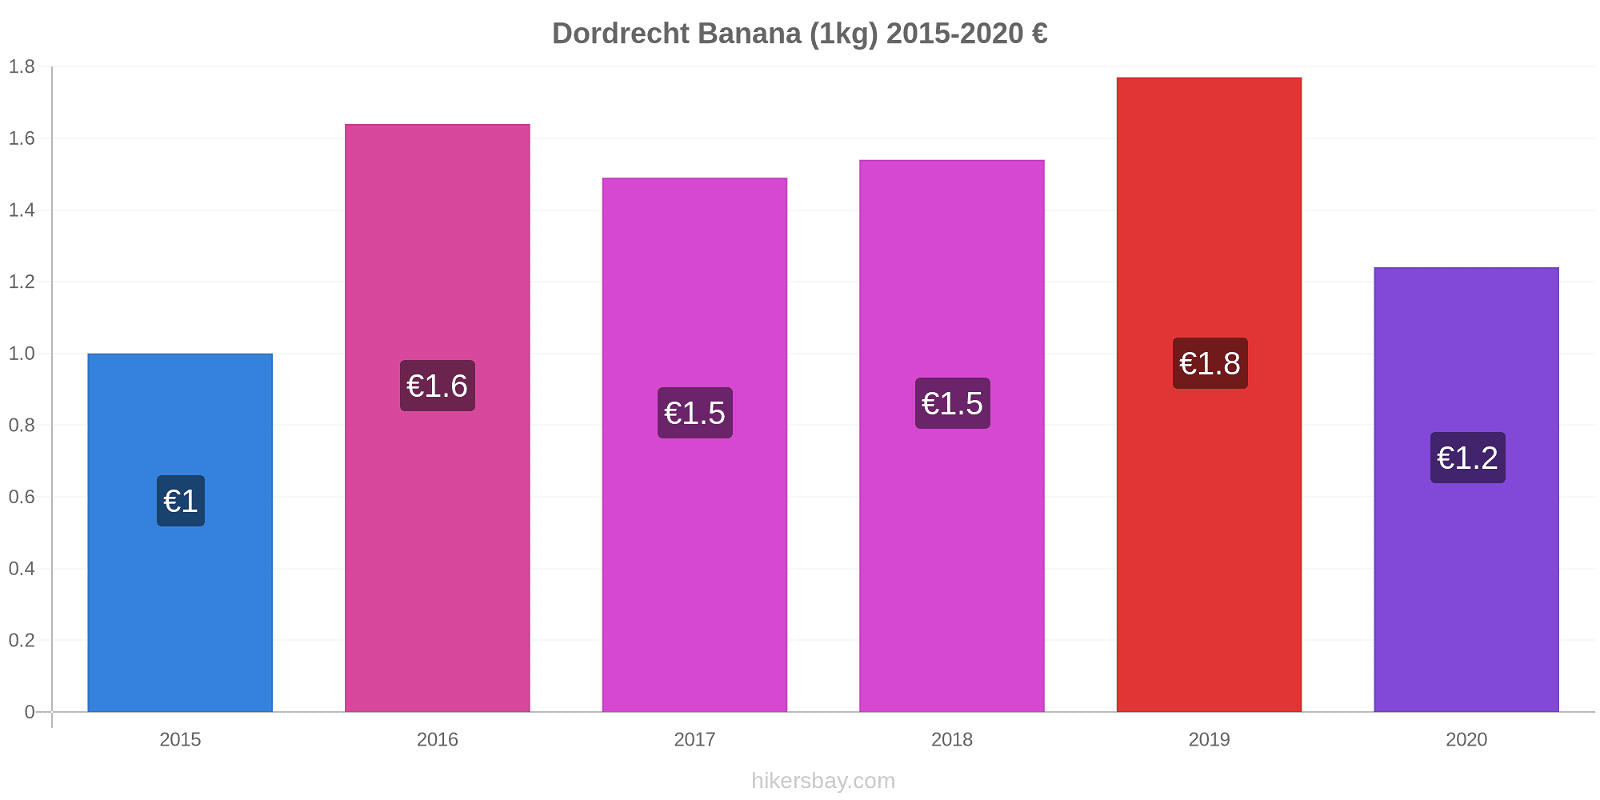 Dordrecht modificări de preț Banana (1kg) hikersbay.com